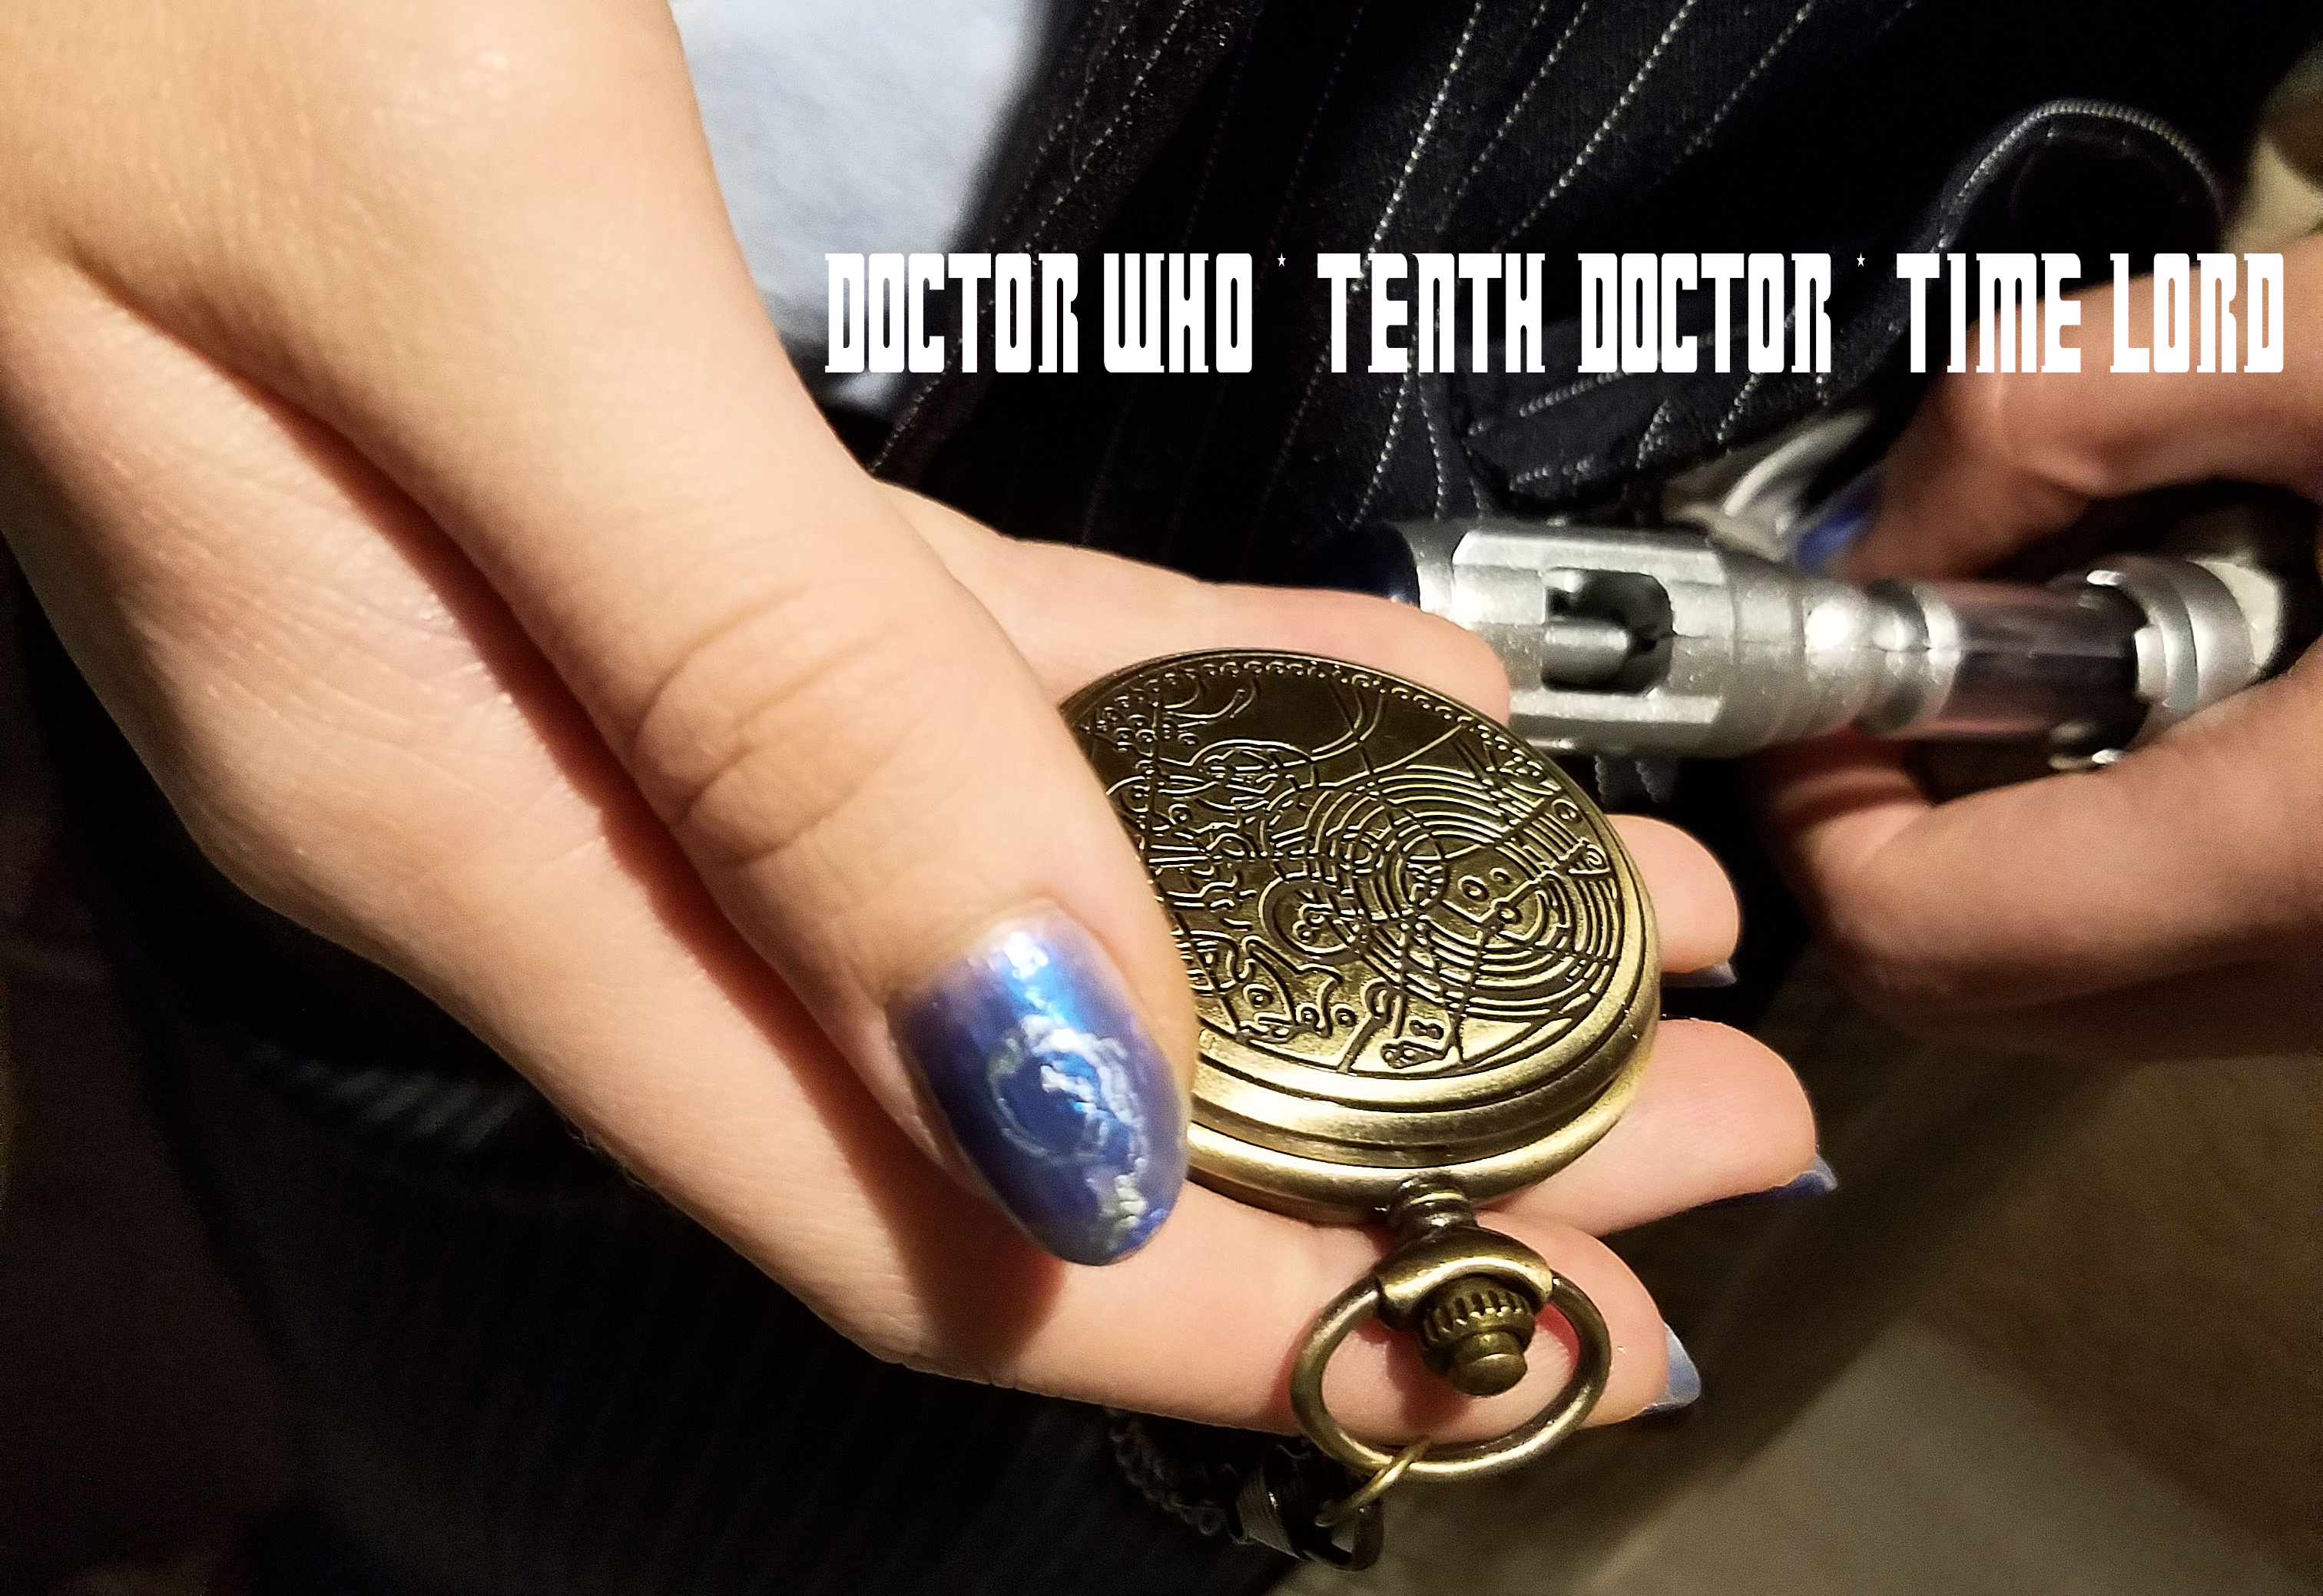 Tenth Doctor Halloween Costume